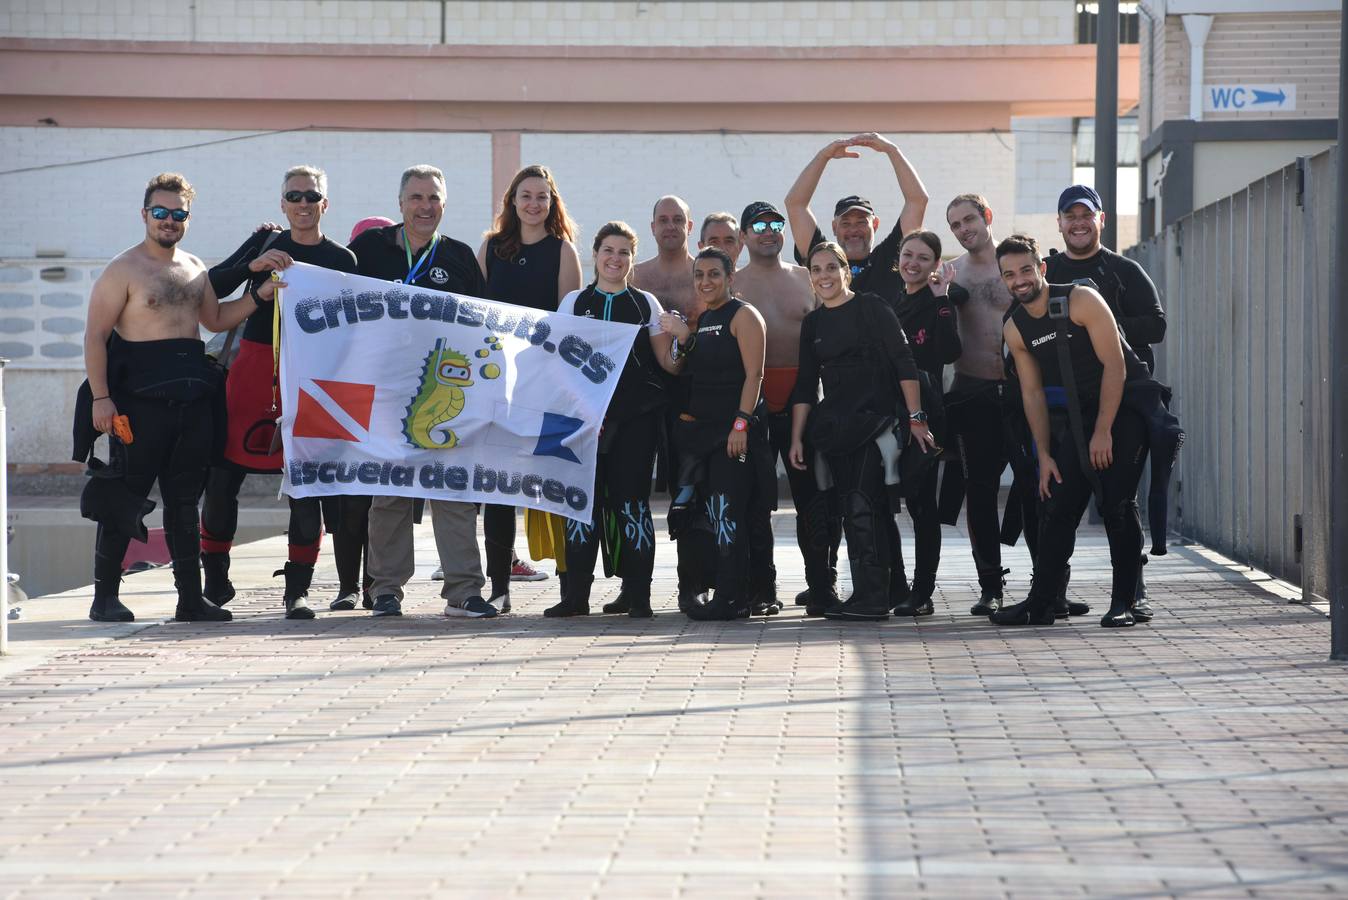 La Red de Vigilantes Marinos, con unos mil voluntarios en toda España, es una iniciativa de la ONG Oceánidas que lleva tres años luchando contra los residuos